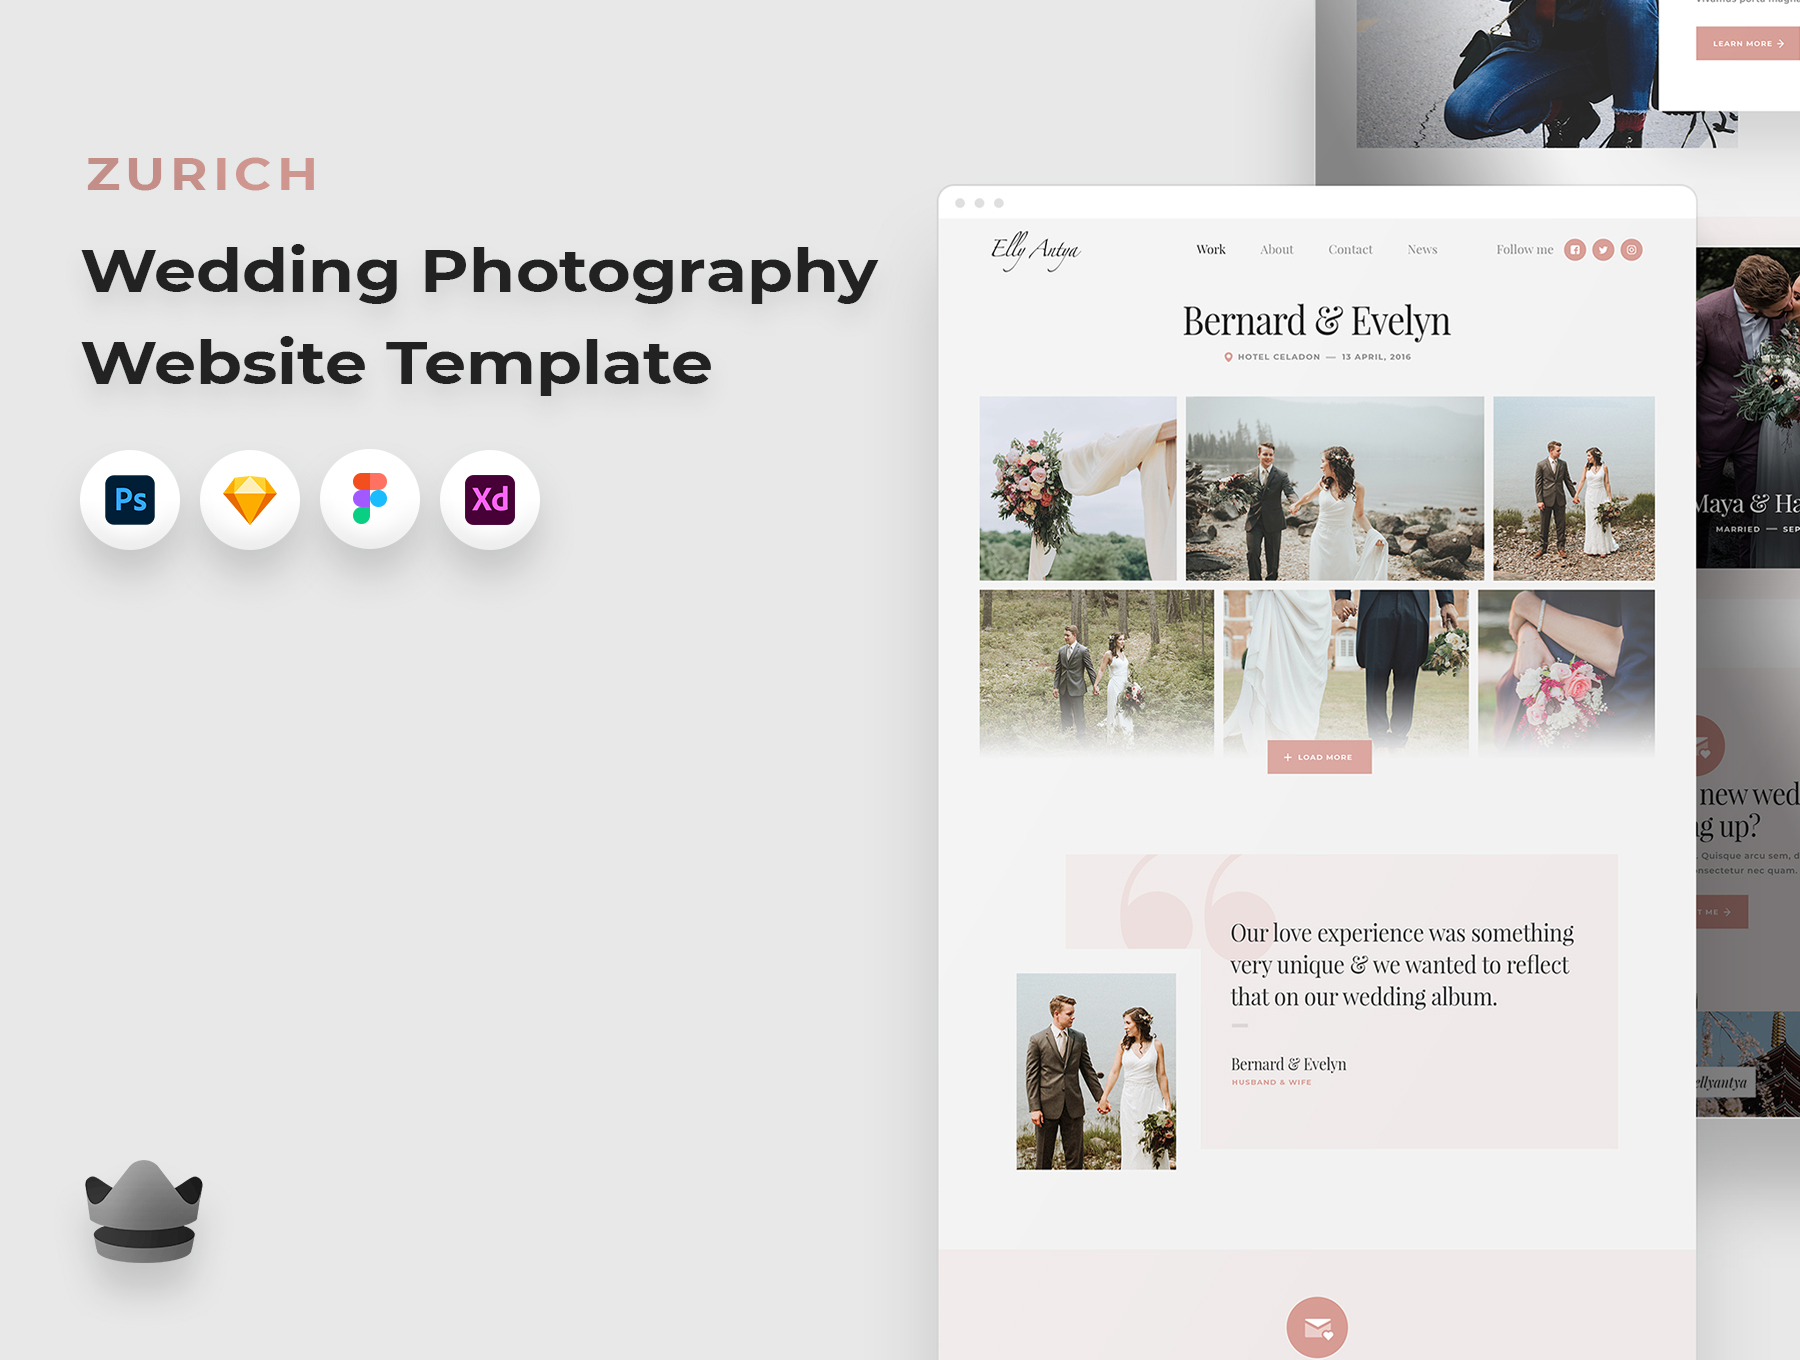 دانلود رابط کاربری وب سایت عکاسی و فتوگرافی Zurich